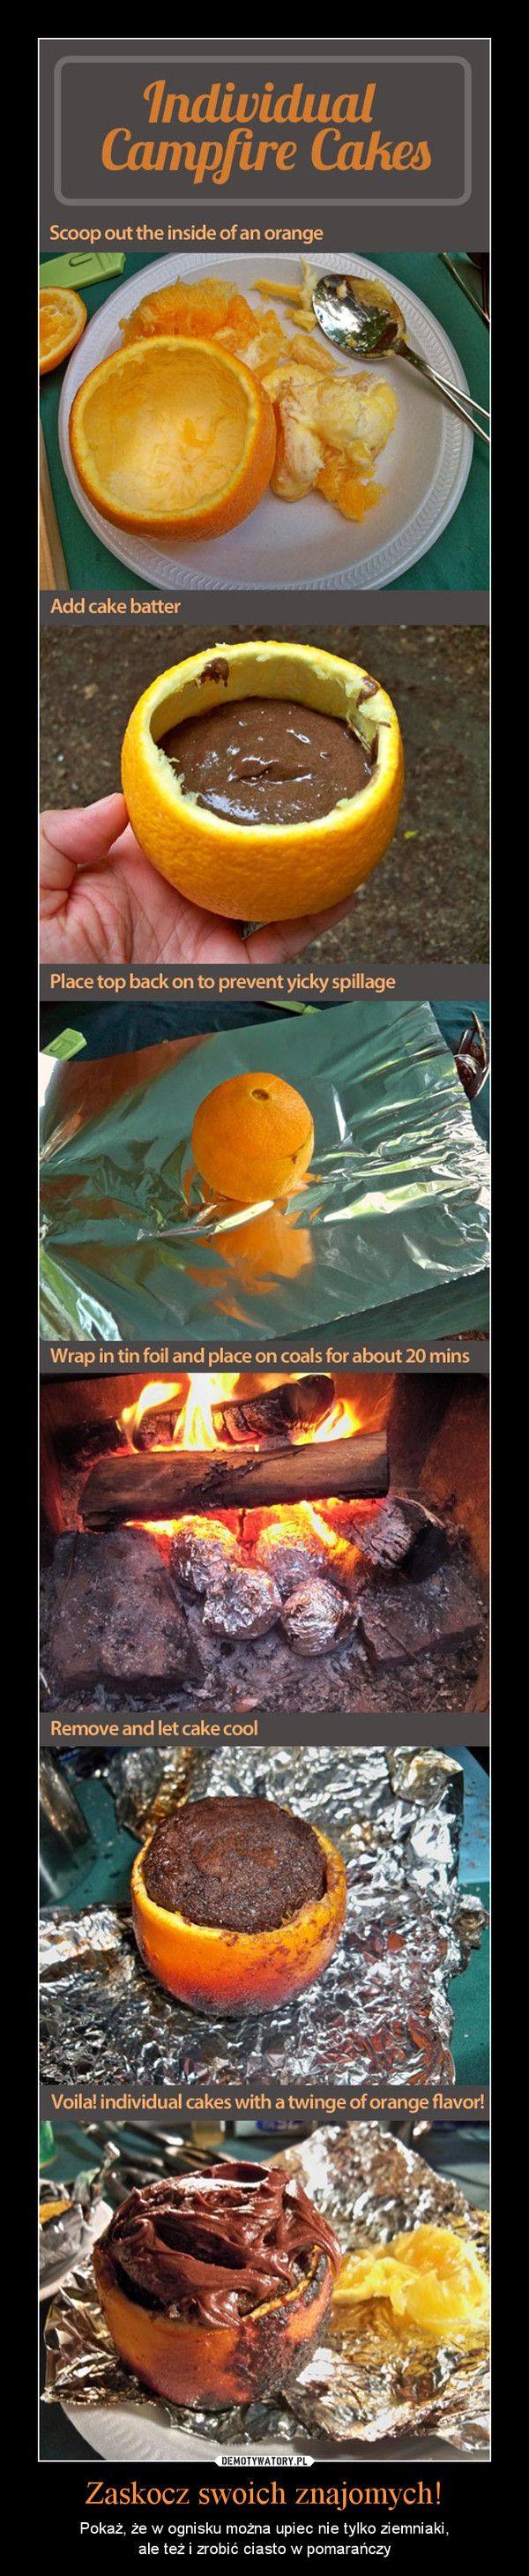 Zaskocz swoich znajomych! – Pokaż, że w ognisku można upiec nie tylko ziemniaki,ale też i zrobić ciasto w pomarańczy 